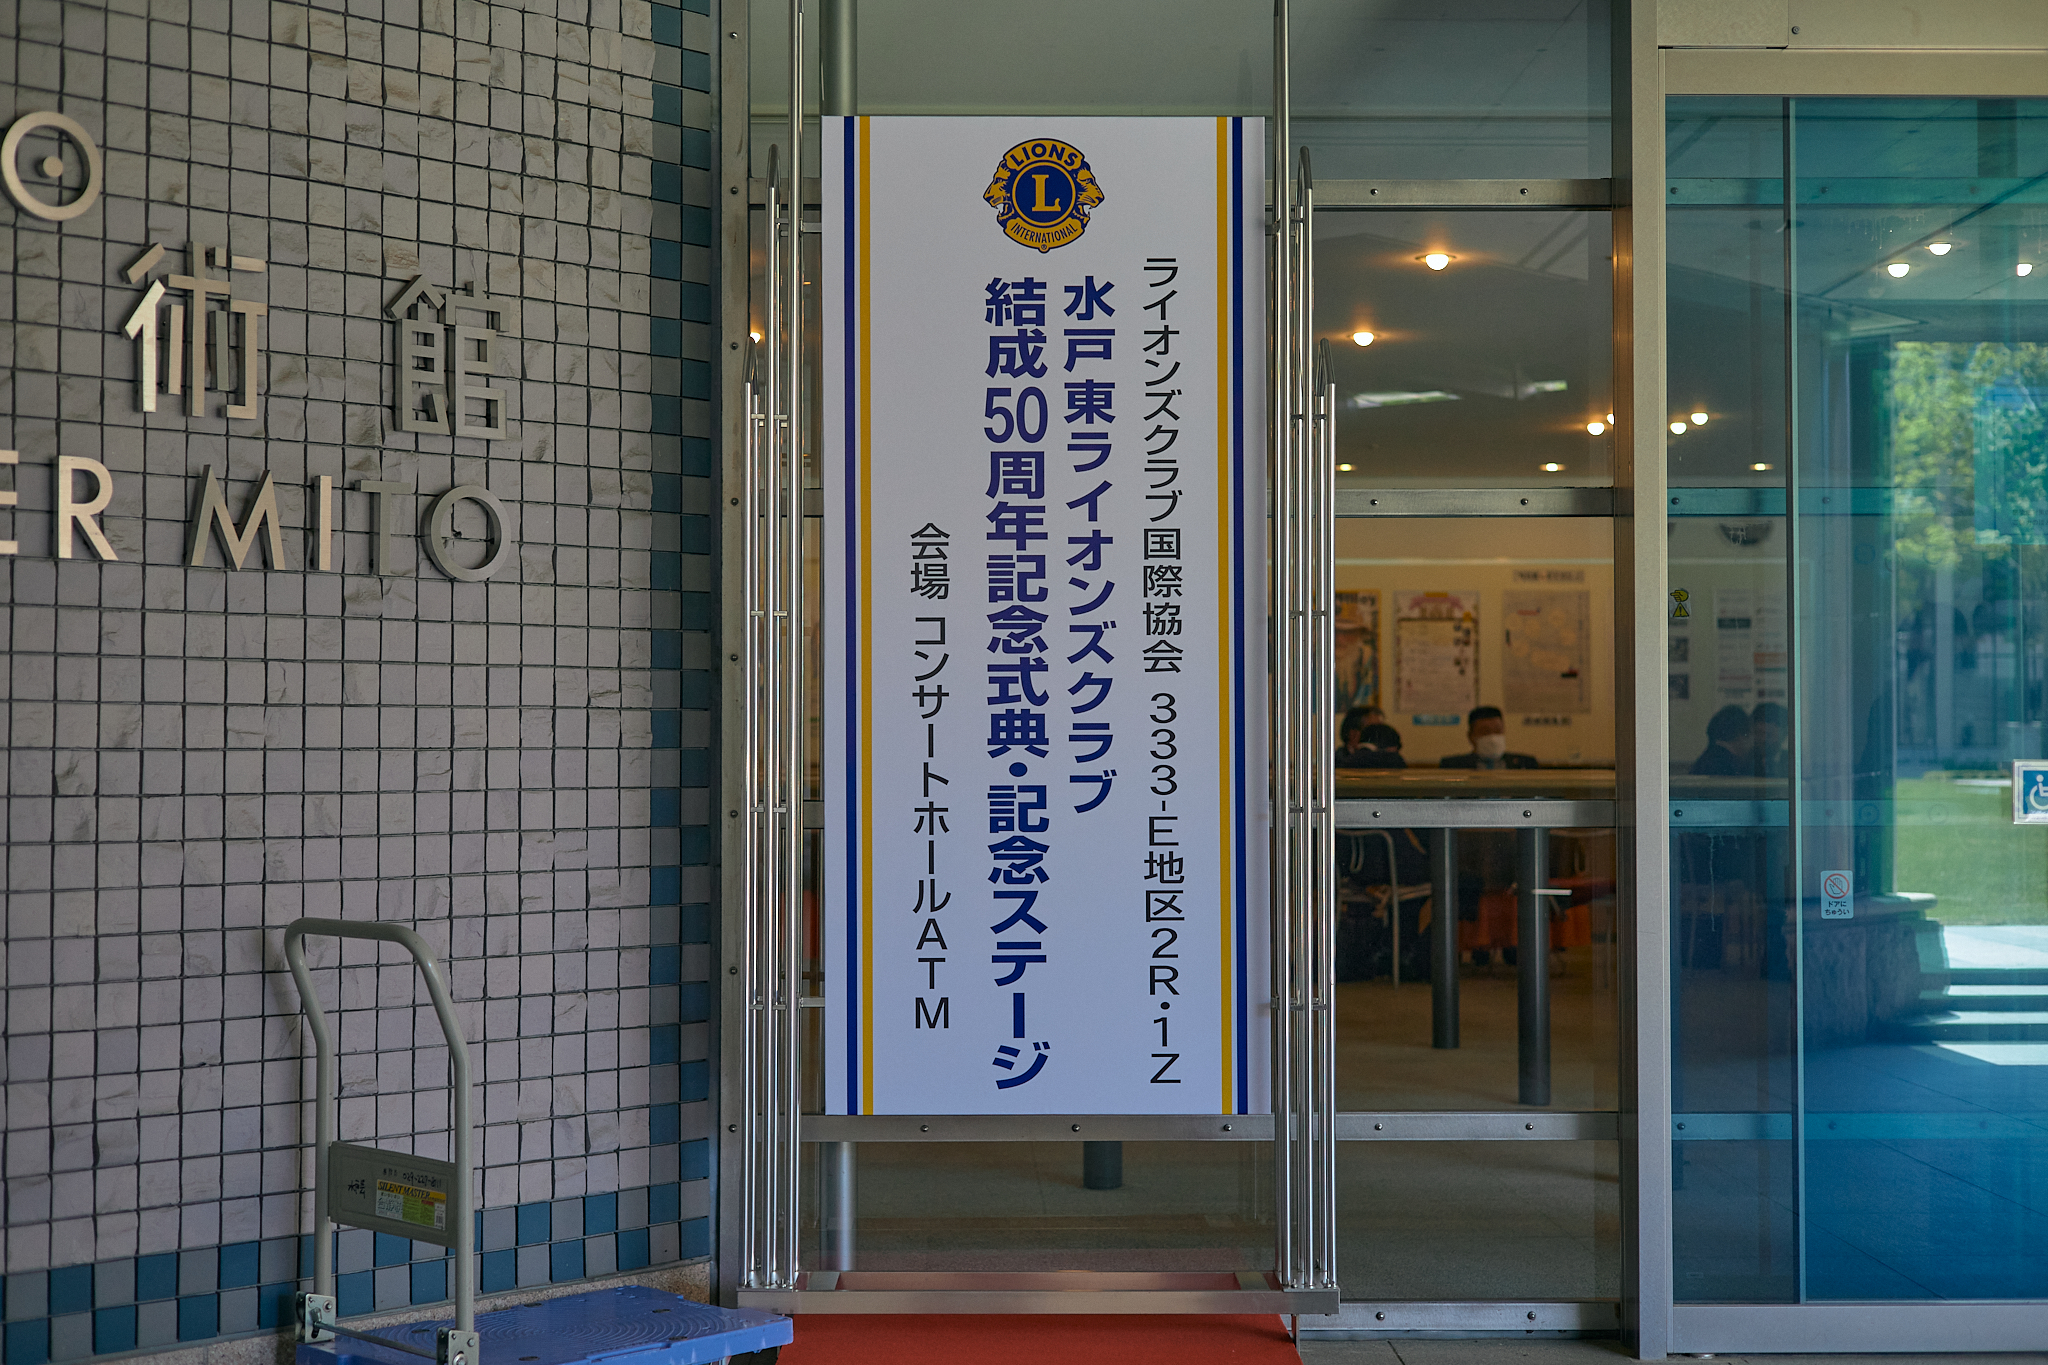 水戸東ライオンズクラブ結成50周年記念式典 ひたちなかベストライオンズクラブ